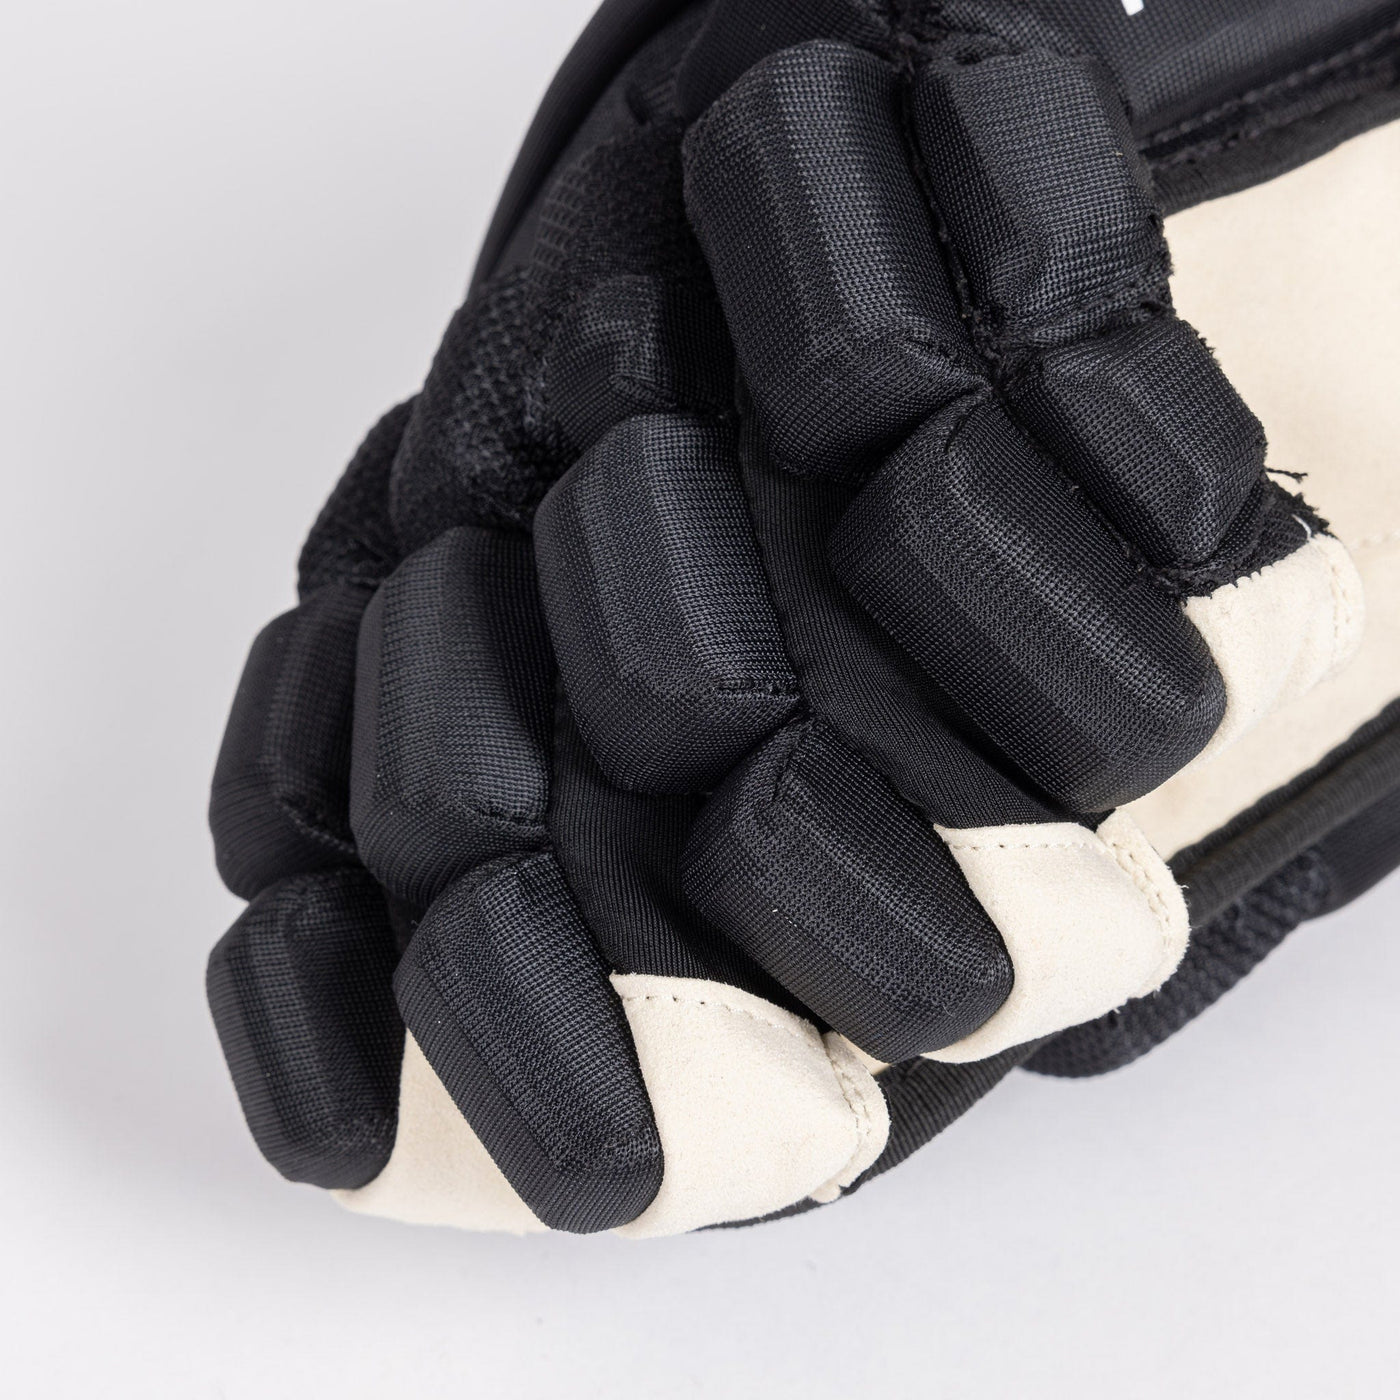 TRUE Catalyst Pro Stock Senior Hockey Glove - Arizona - The Hockey Shop Source For Sports